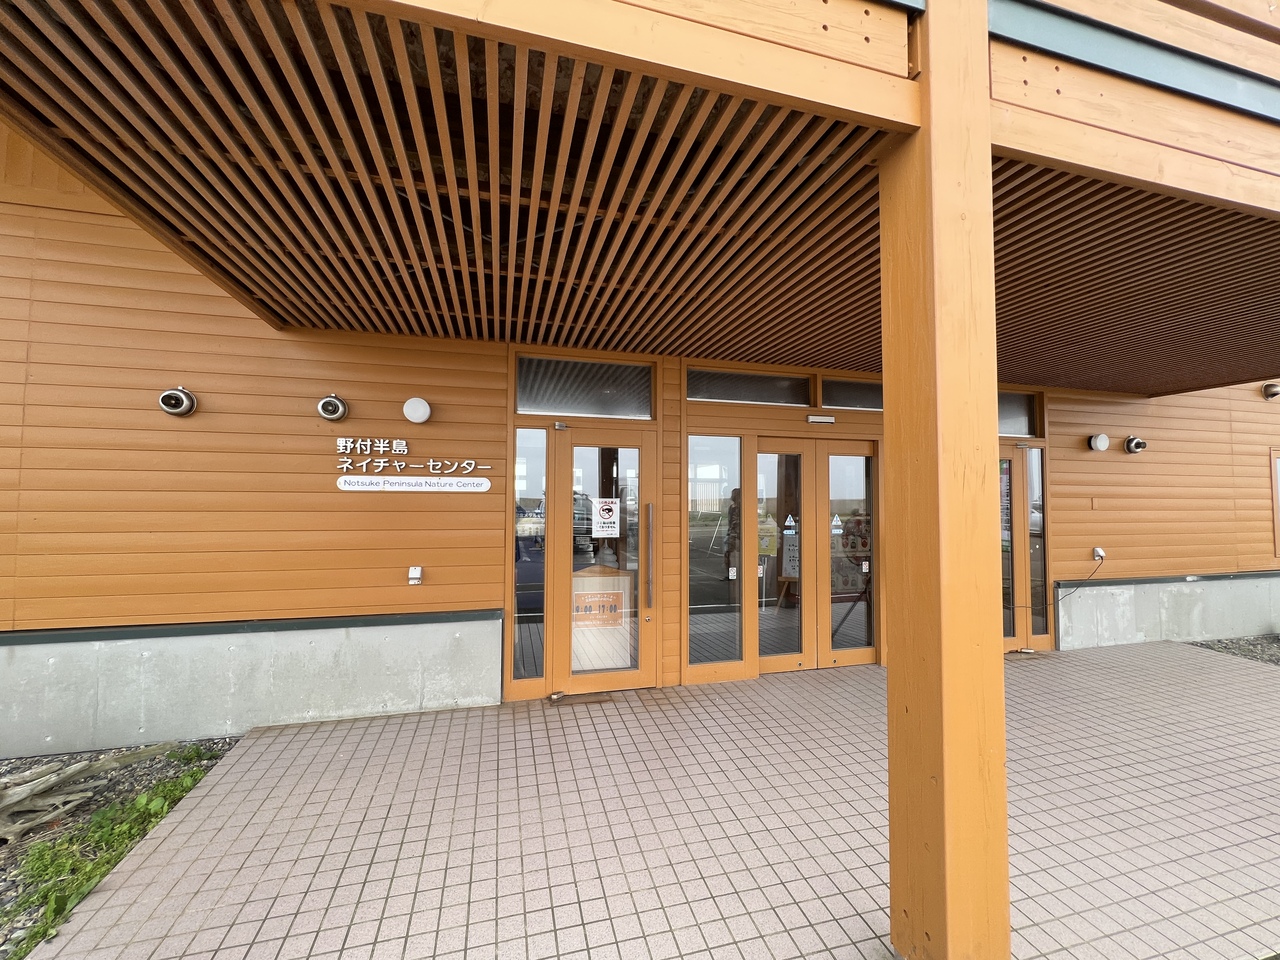 北海道の一人旅のおすすめの観光スポット30選　26位:野付半島ネイチャーセンター